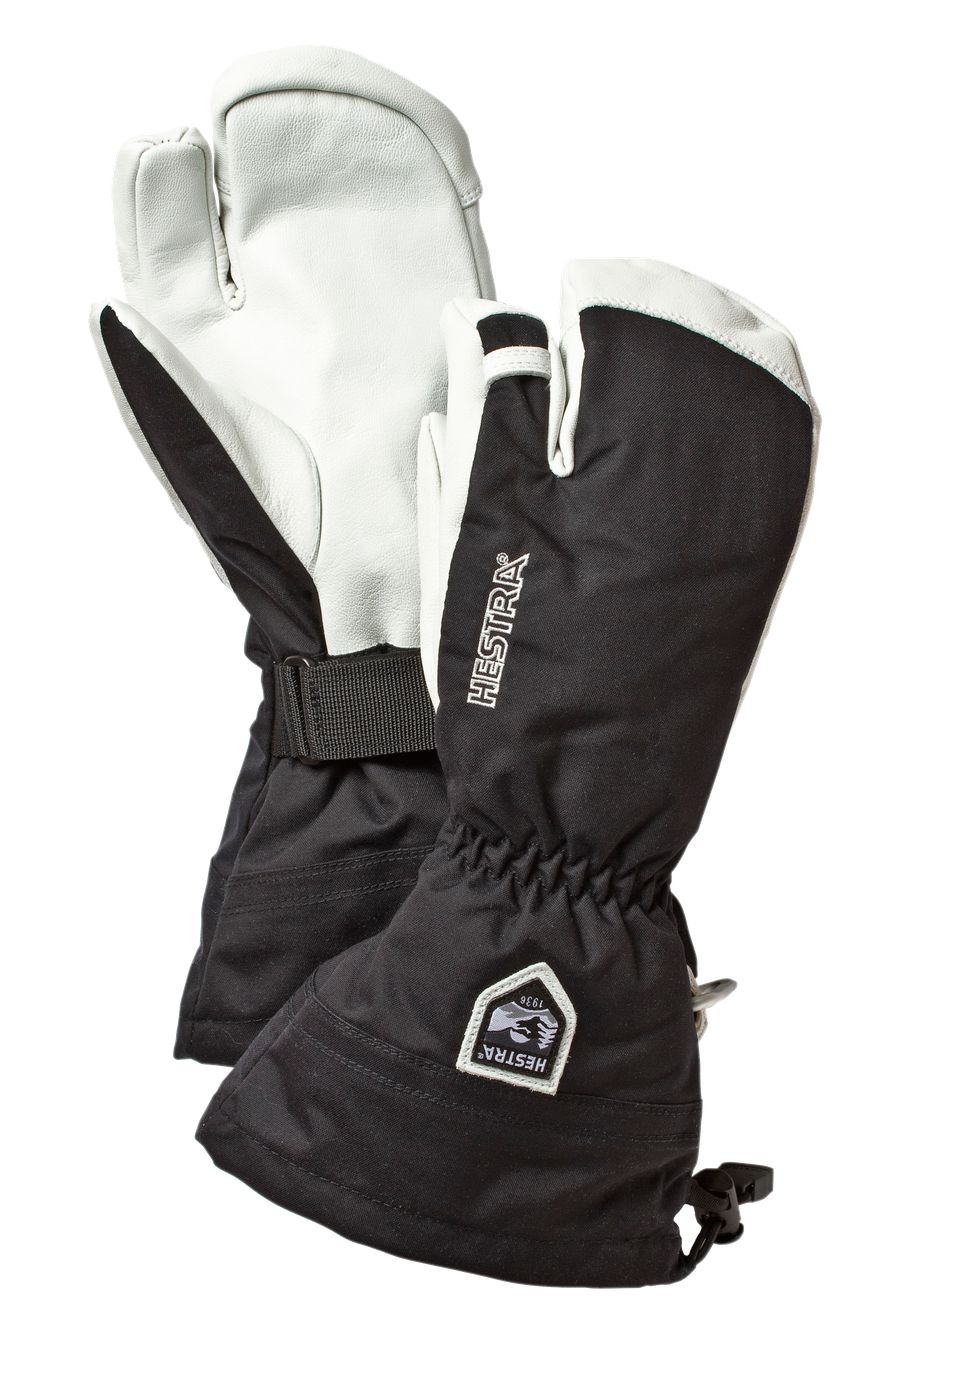 Boekhouder Overwinnen paars Hestra Heli Ski 3-Finger Ski Gloves | Hickory and Tweed | New